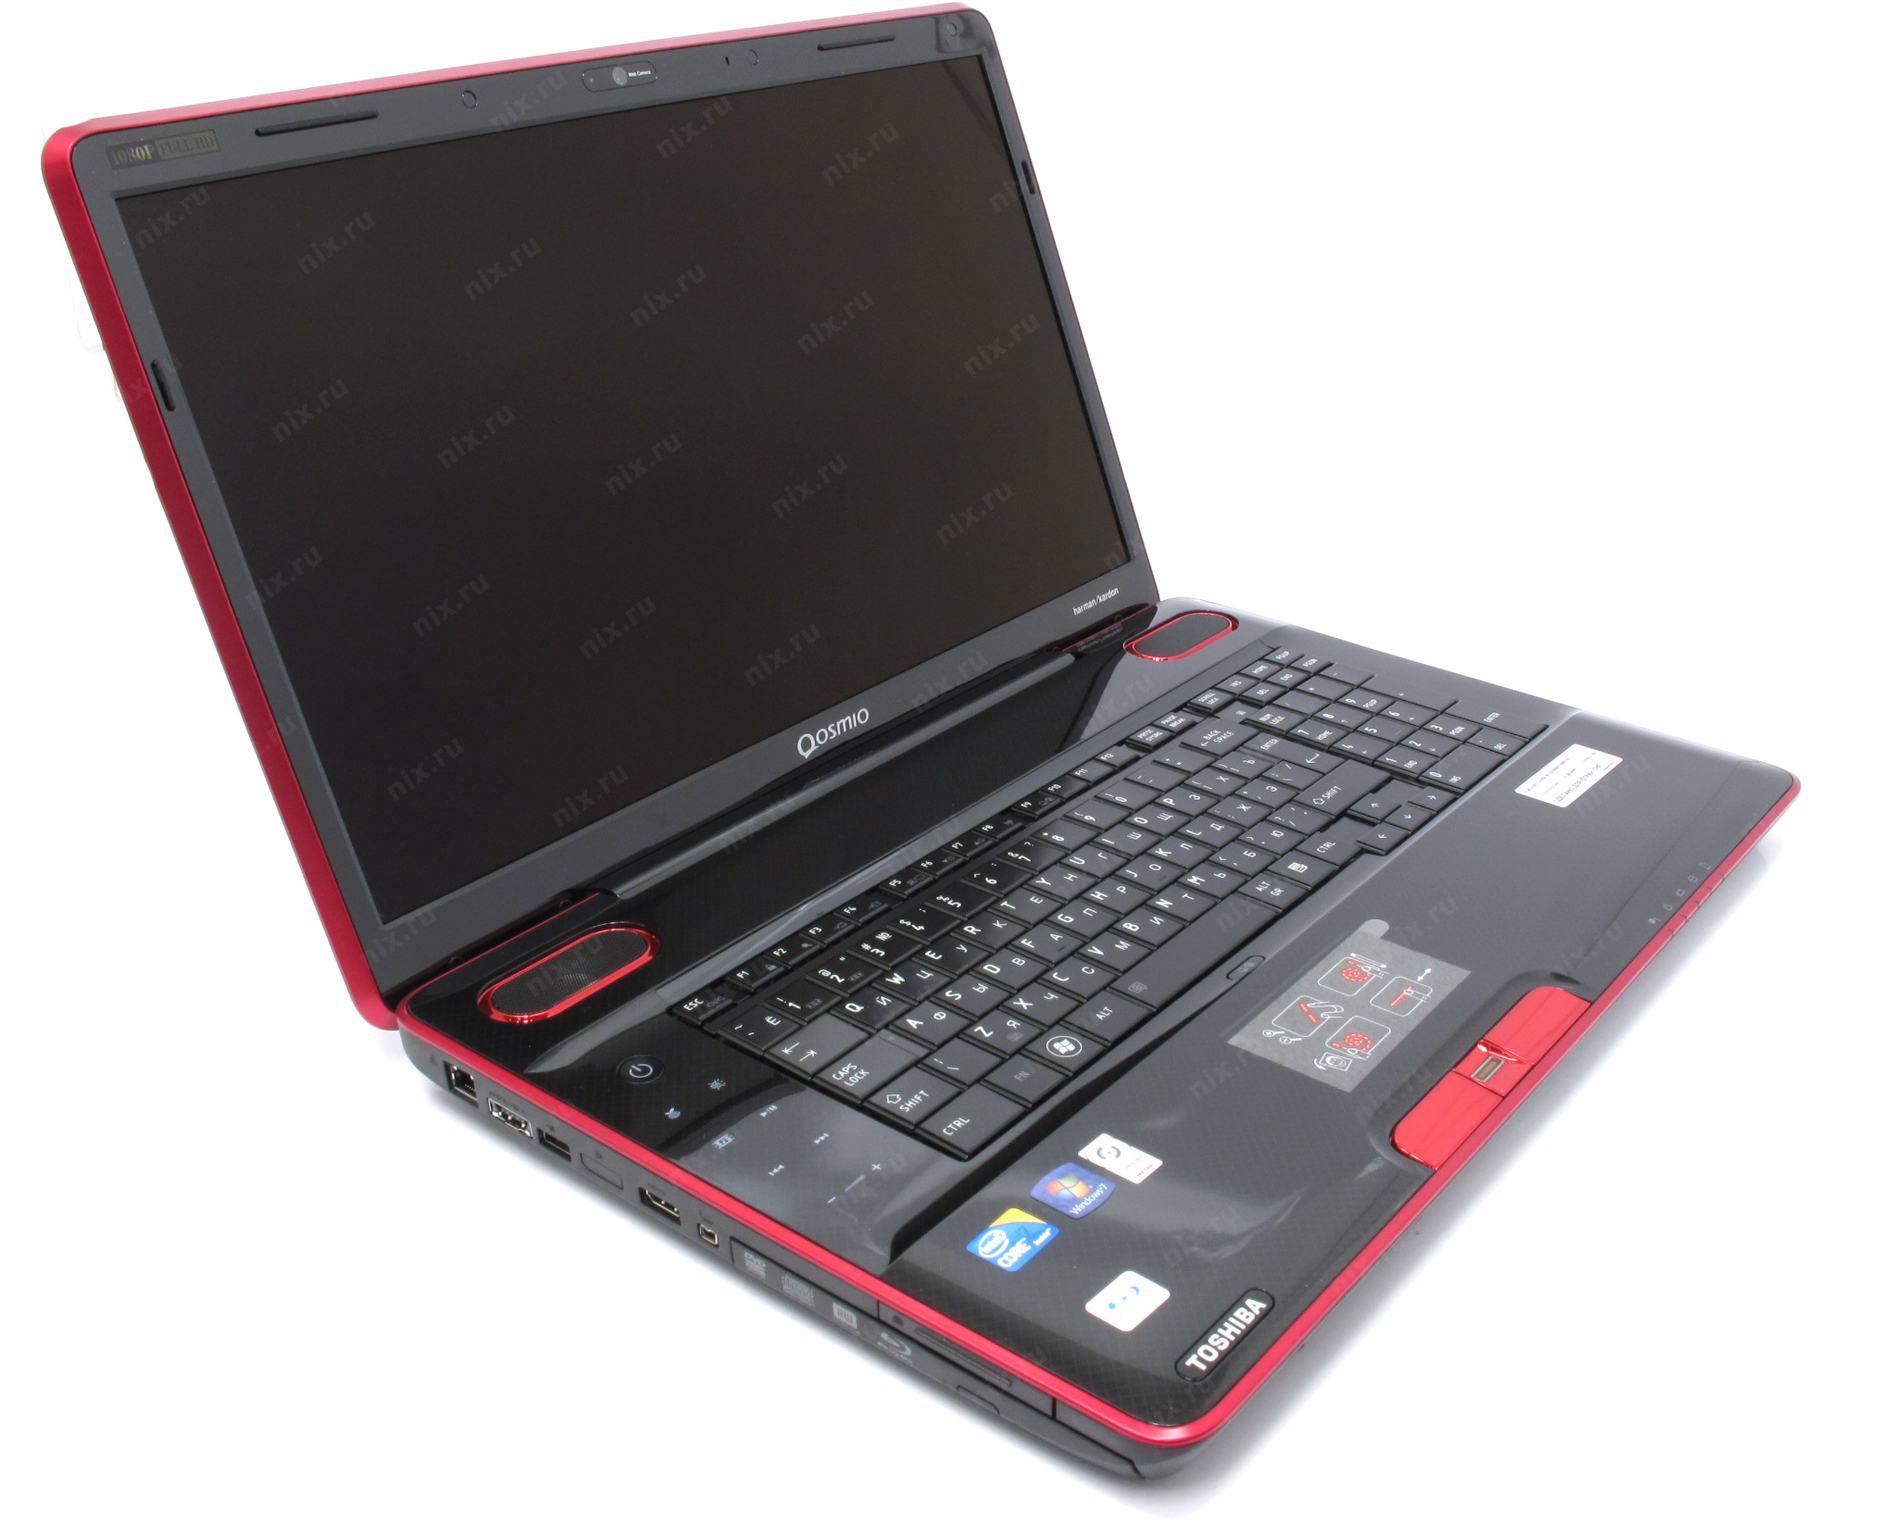 Купить Ноутбук Qosmio X500-123